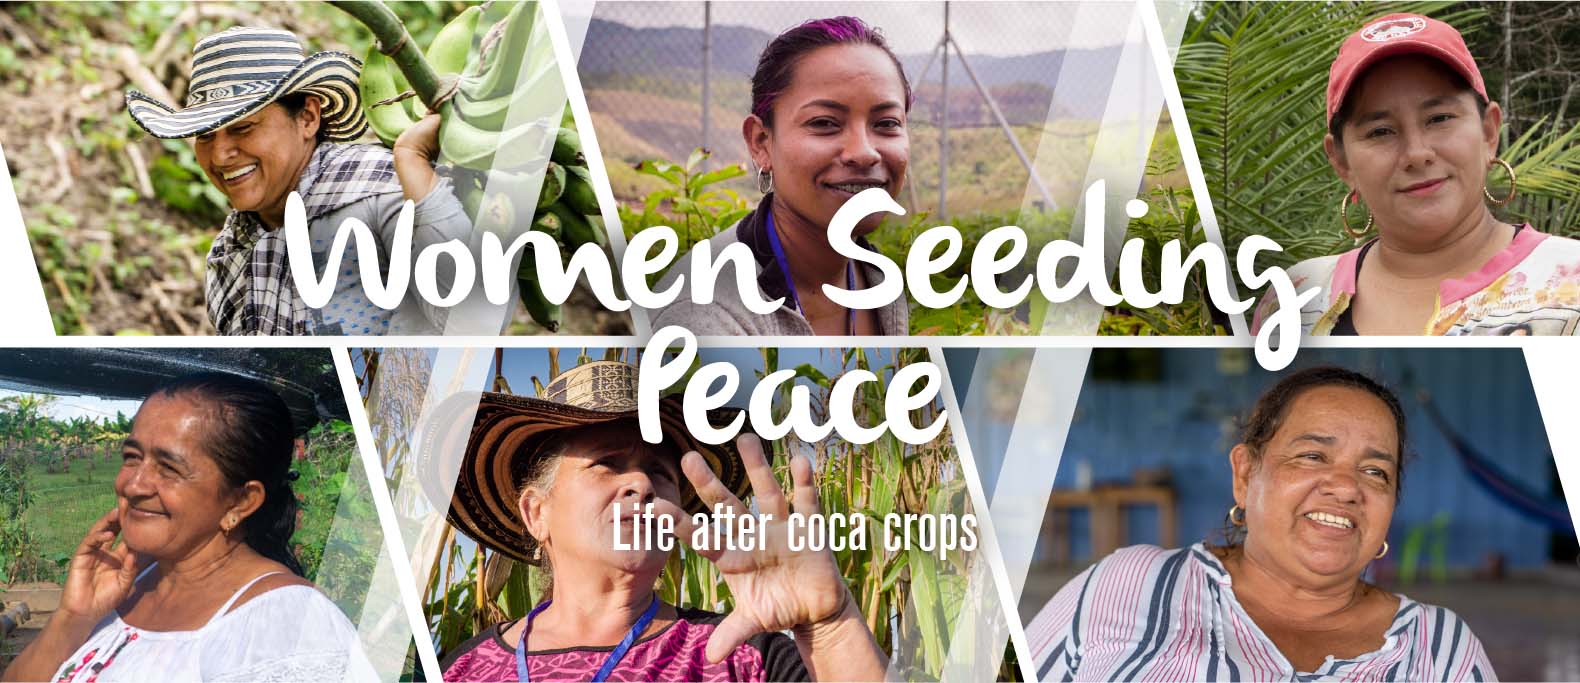 Women Seeding Peace EN banner